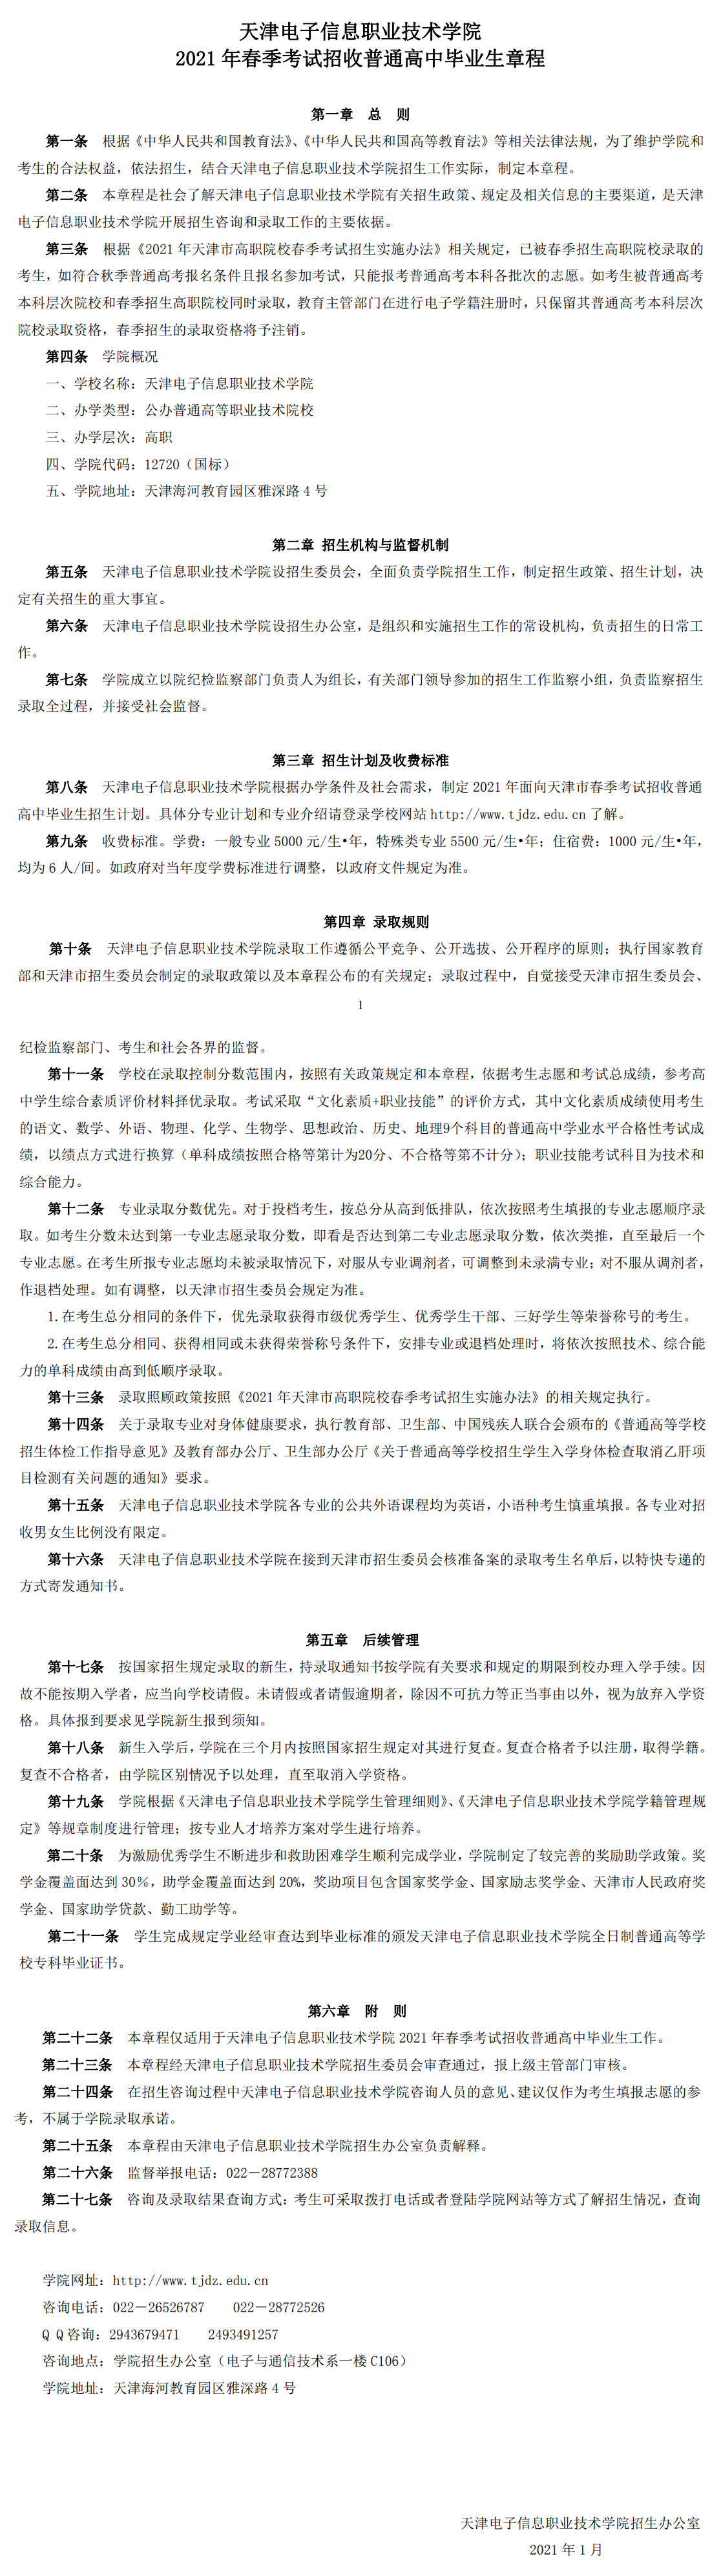 2021年天津电子信息职业技术学院春季考试招生章程